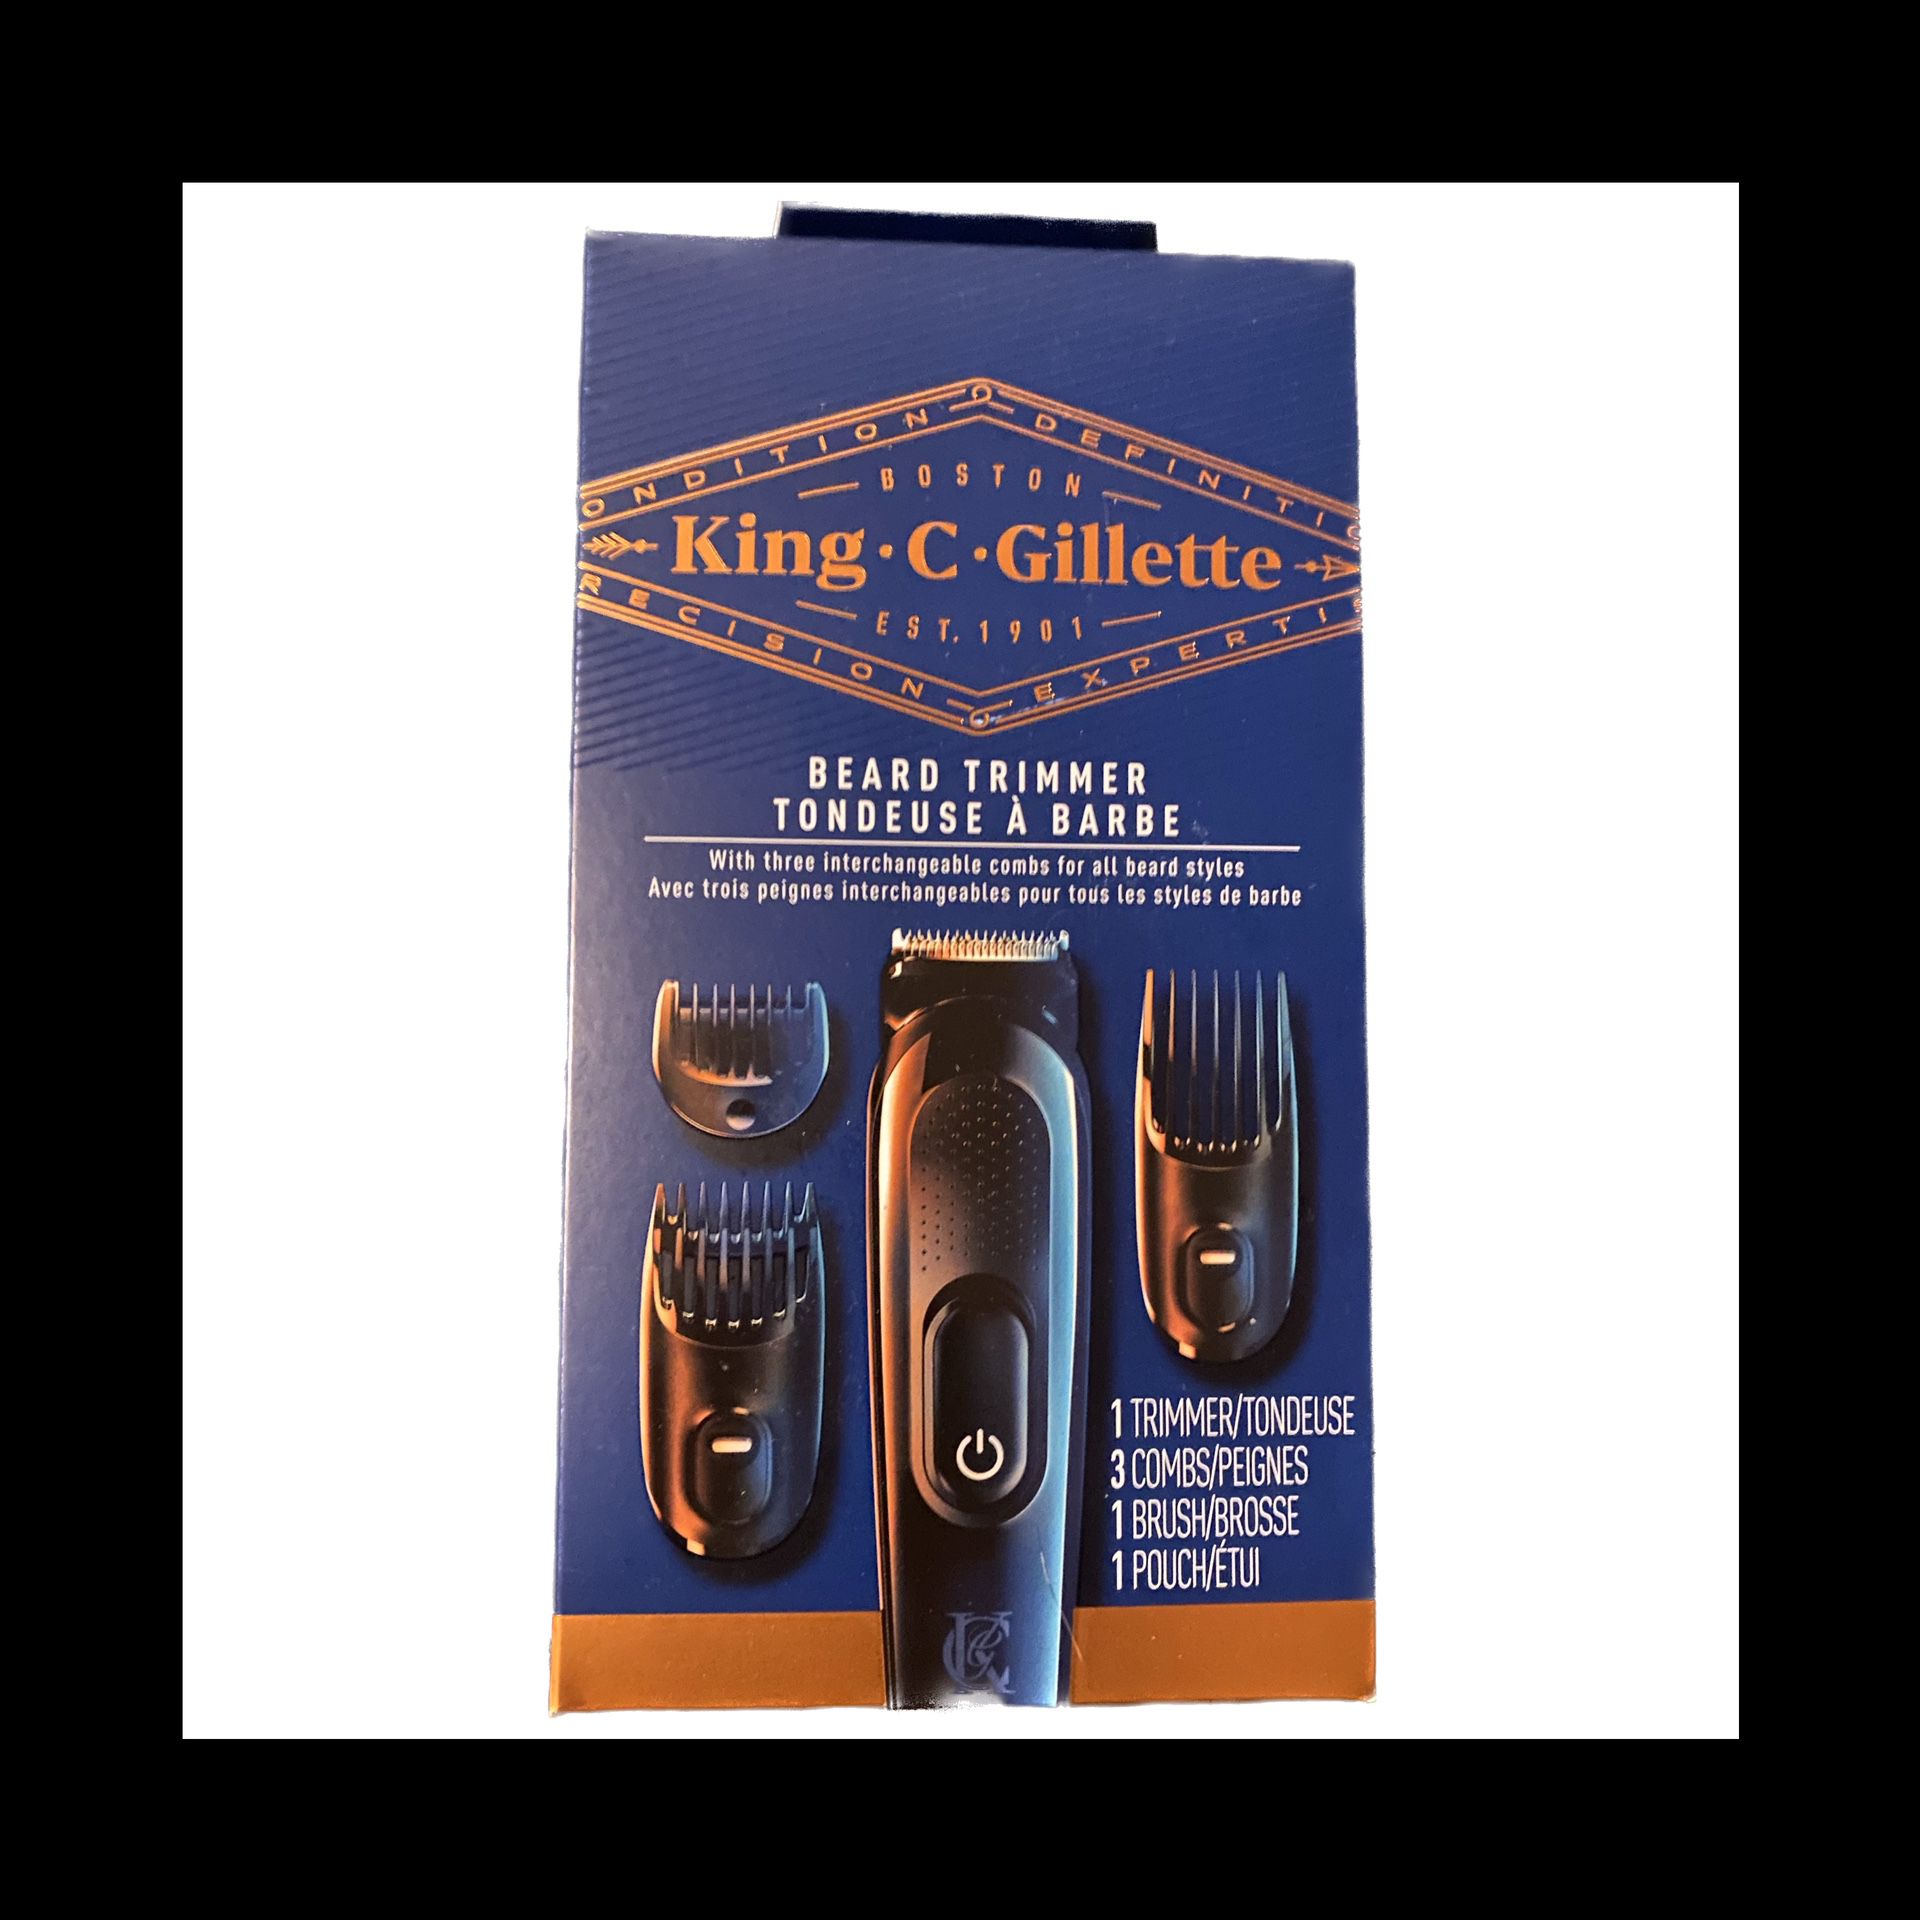 King C. Gillette “Beard Trimmer” Kit 